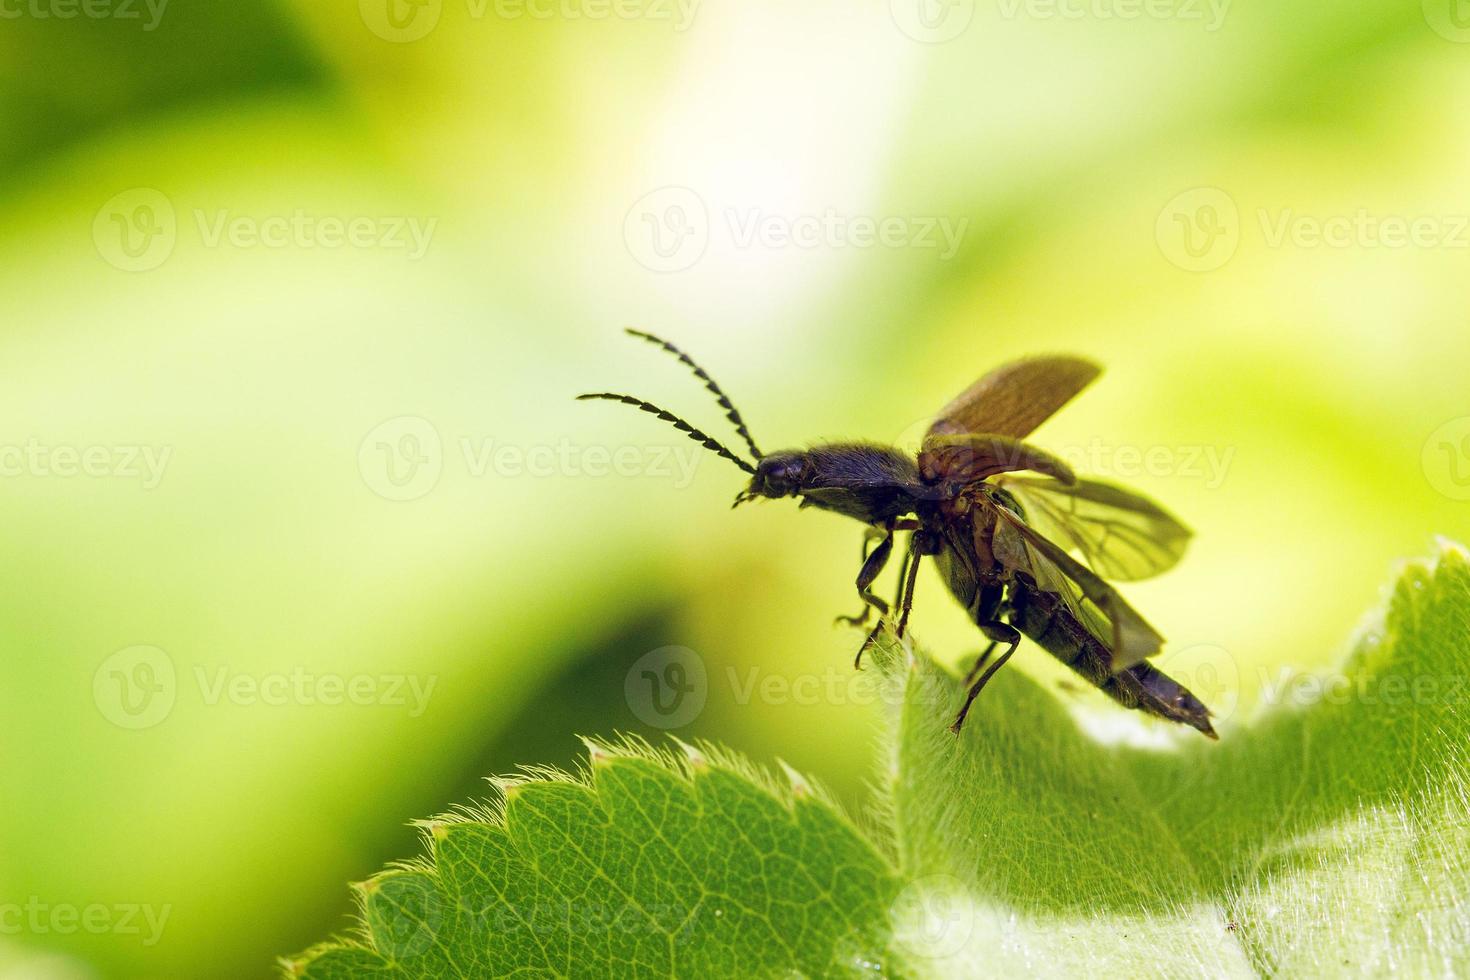 haga clic en el despegue del escarabajo foto